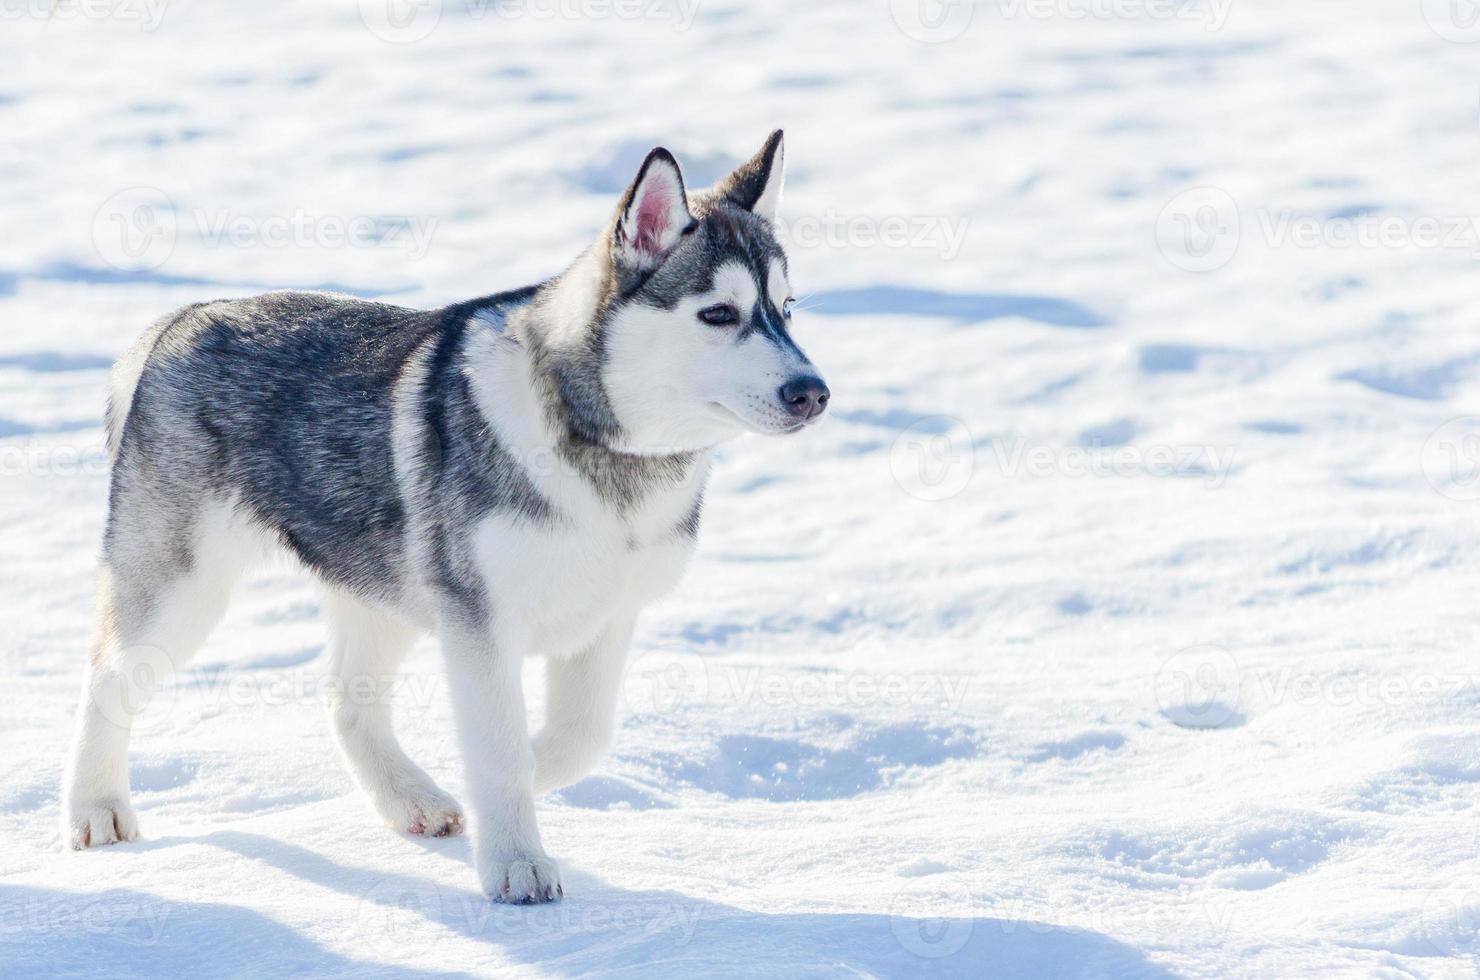 kleiner sibirischer husky-hund im freien zu fuß, schneehintergrund. Schlittenhunde-Renntraining bei kaltem Schneewetter. starker, süßer und schneller Rassehund für die Teamarbeit mit Schlitten. foto